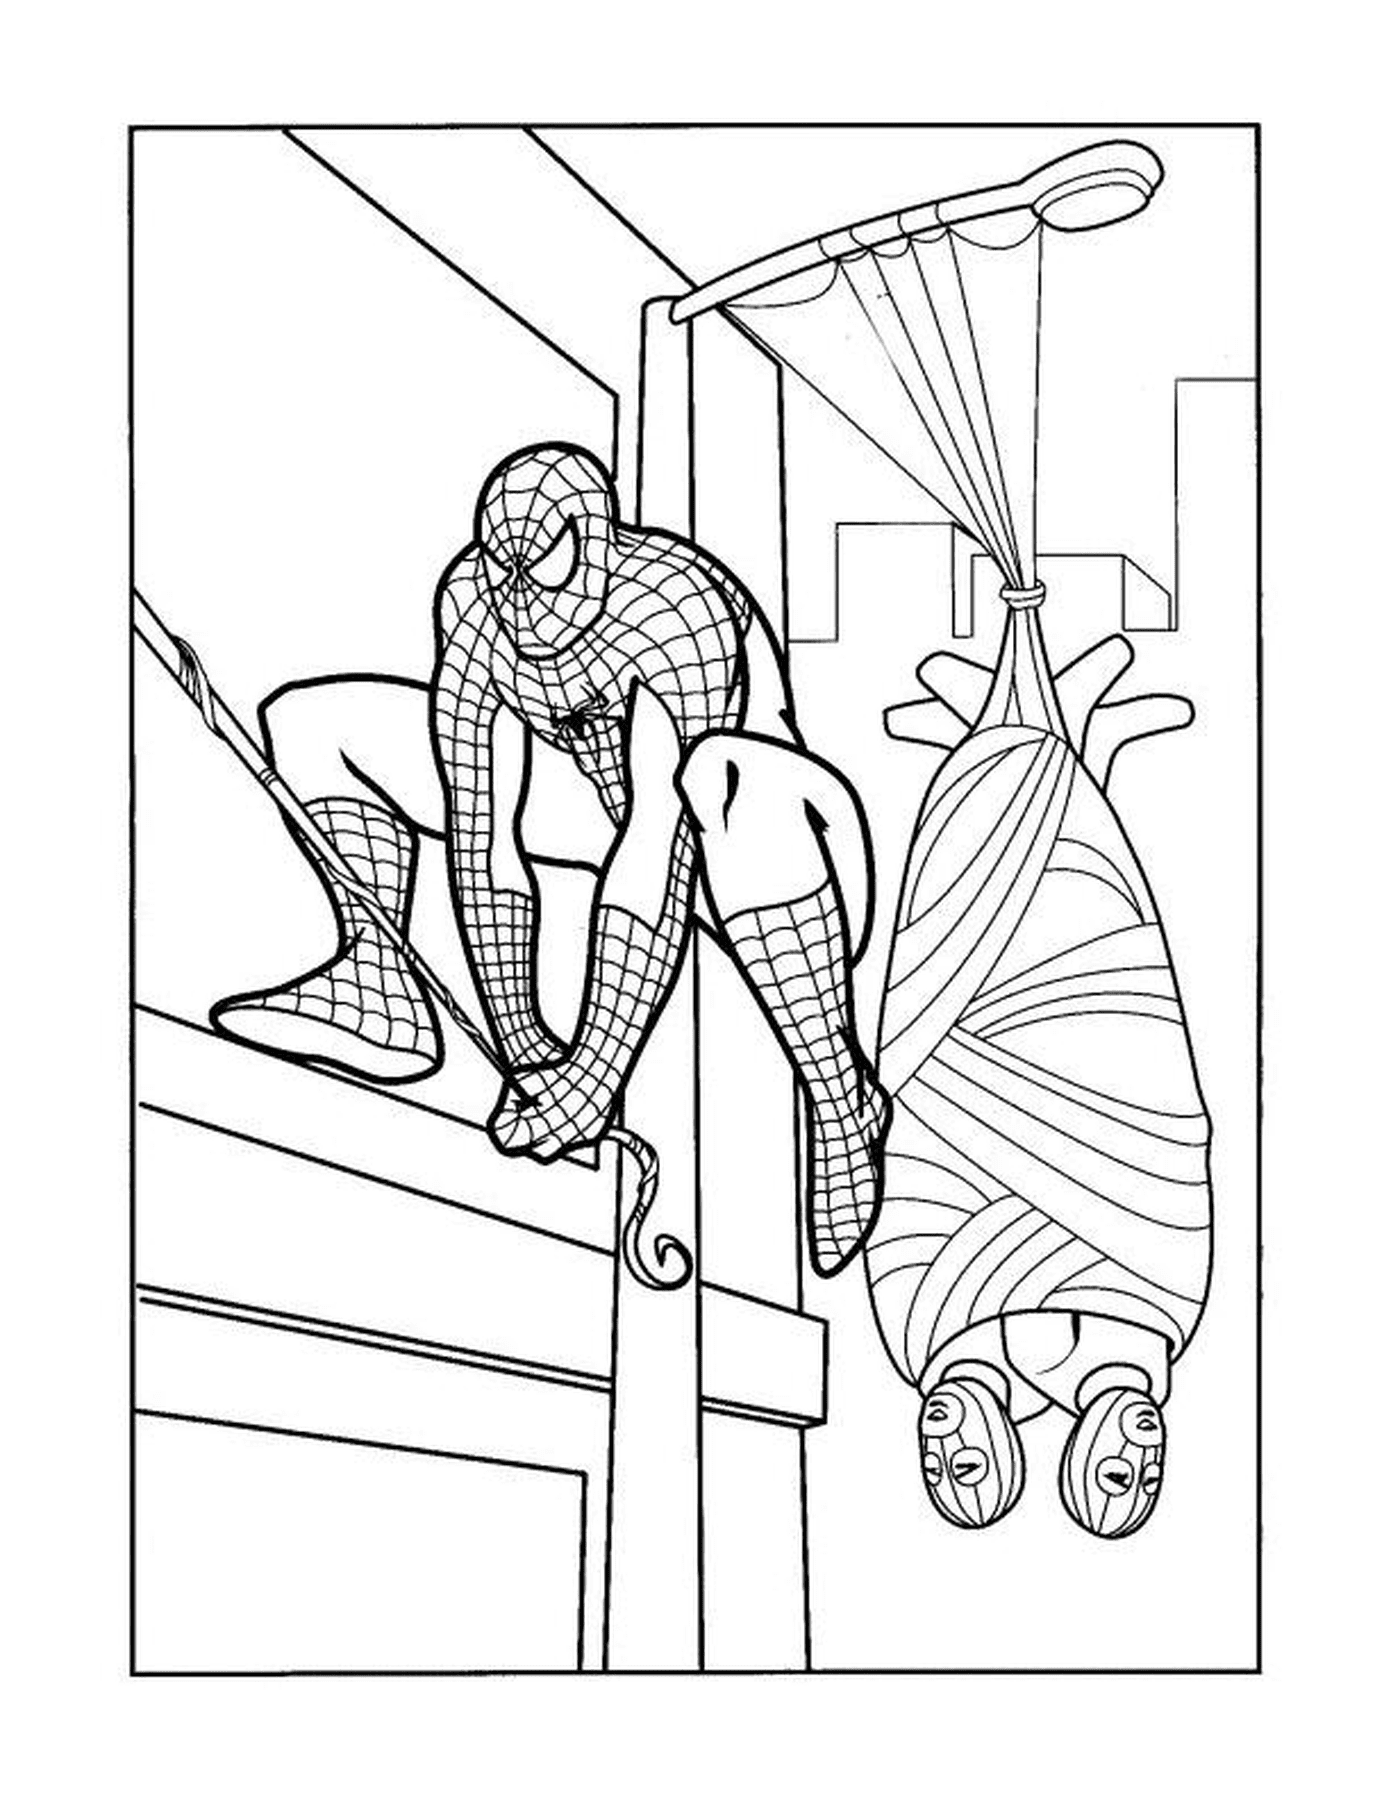  Человек-паук лазит по зданию 